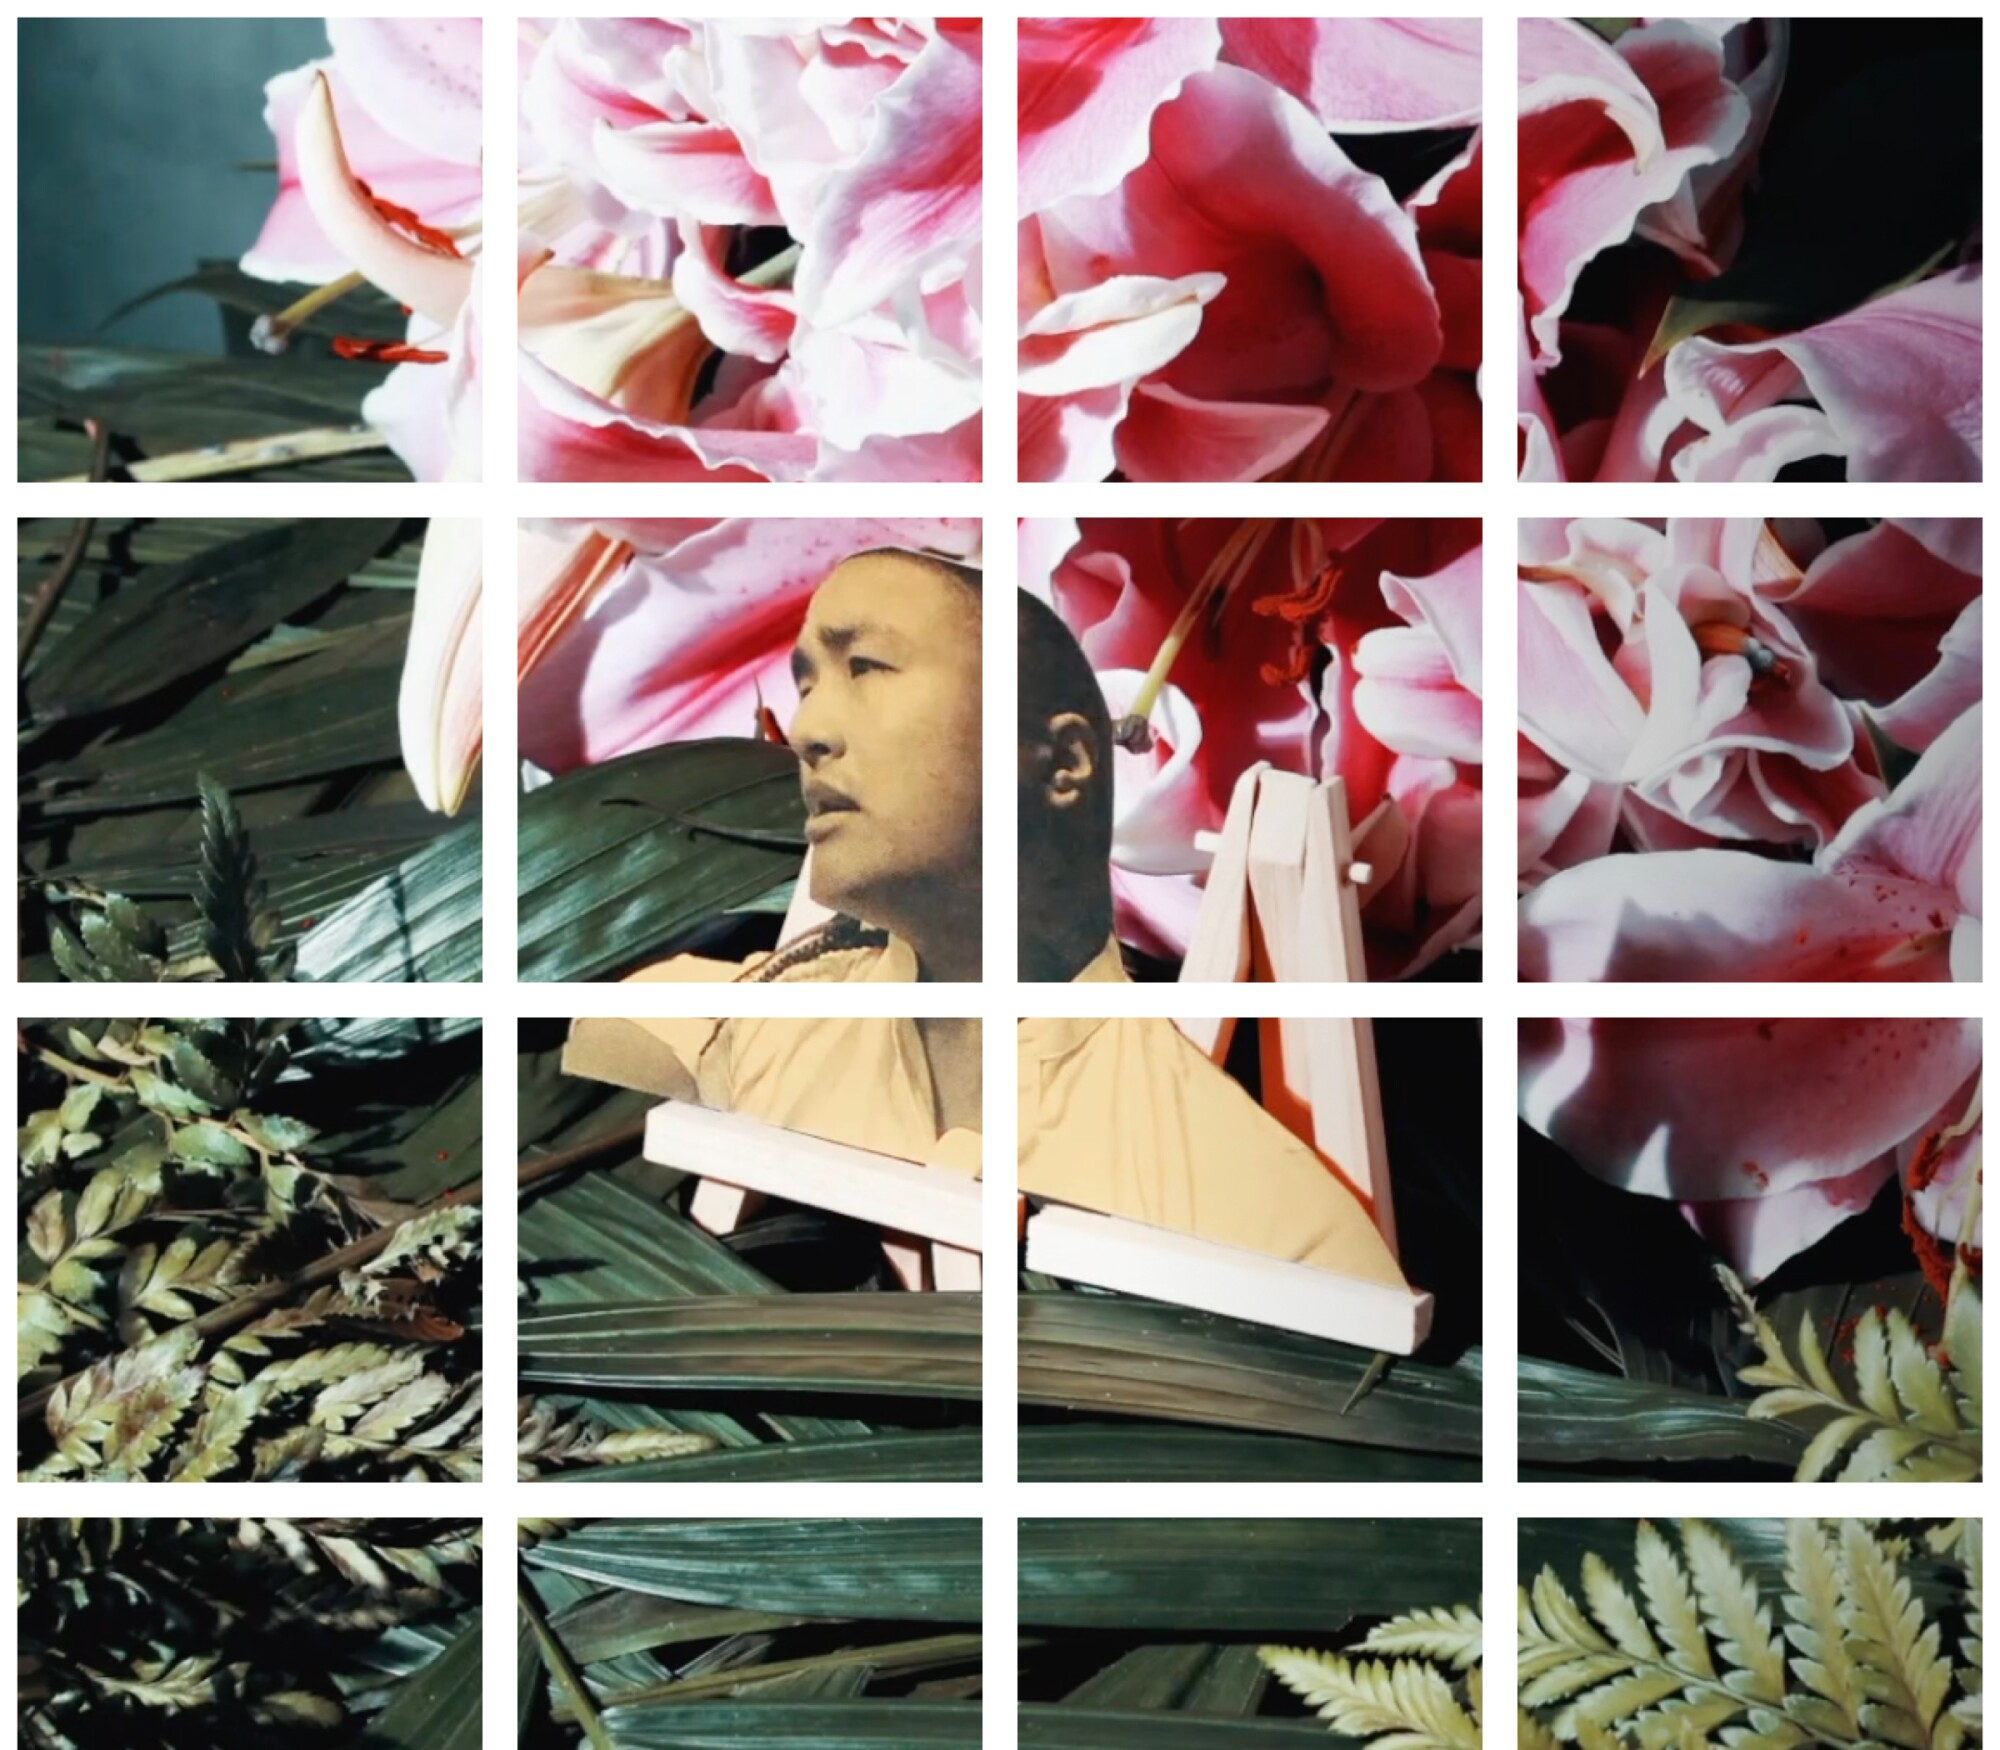 Obra de quadrados de grade com cabeça de homem entre flores cor de rosa e folhagens.